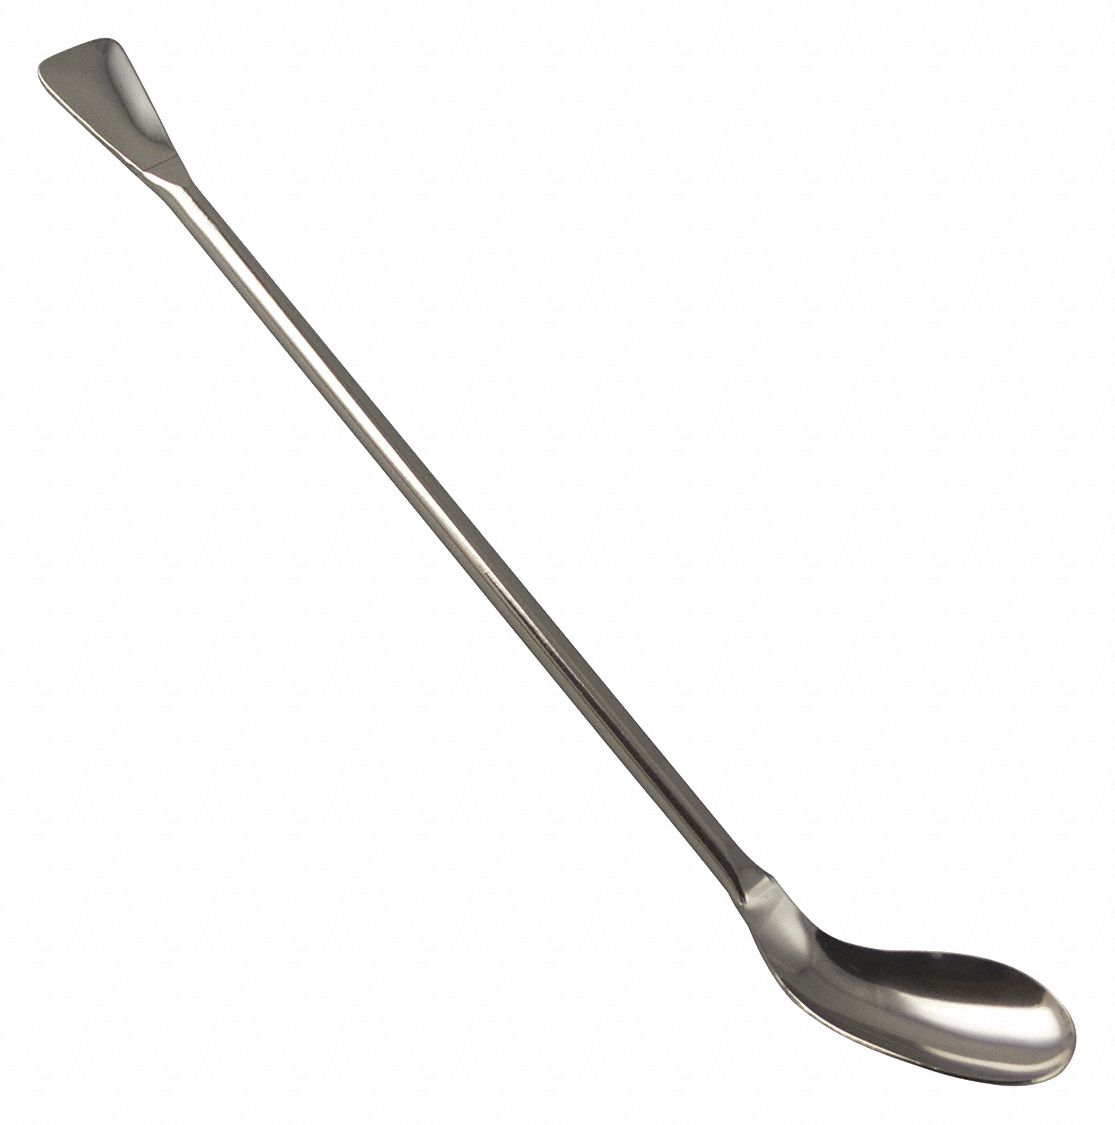 laboratory spatula